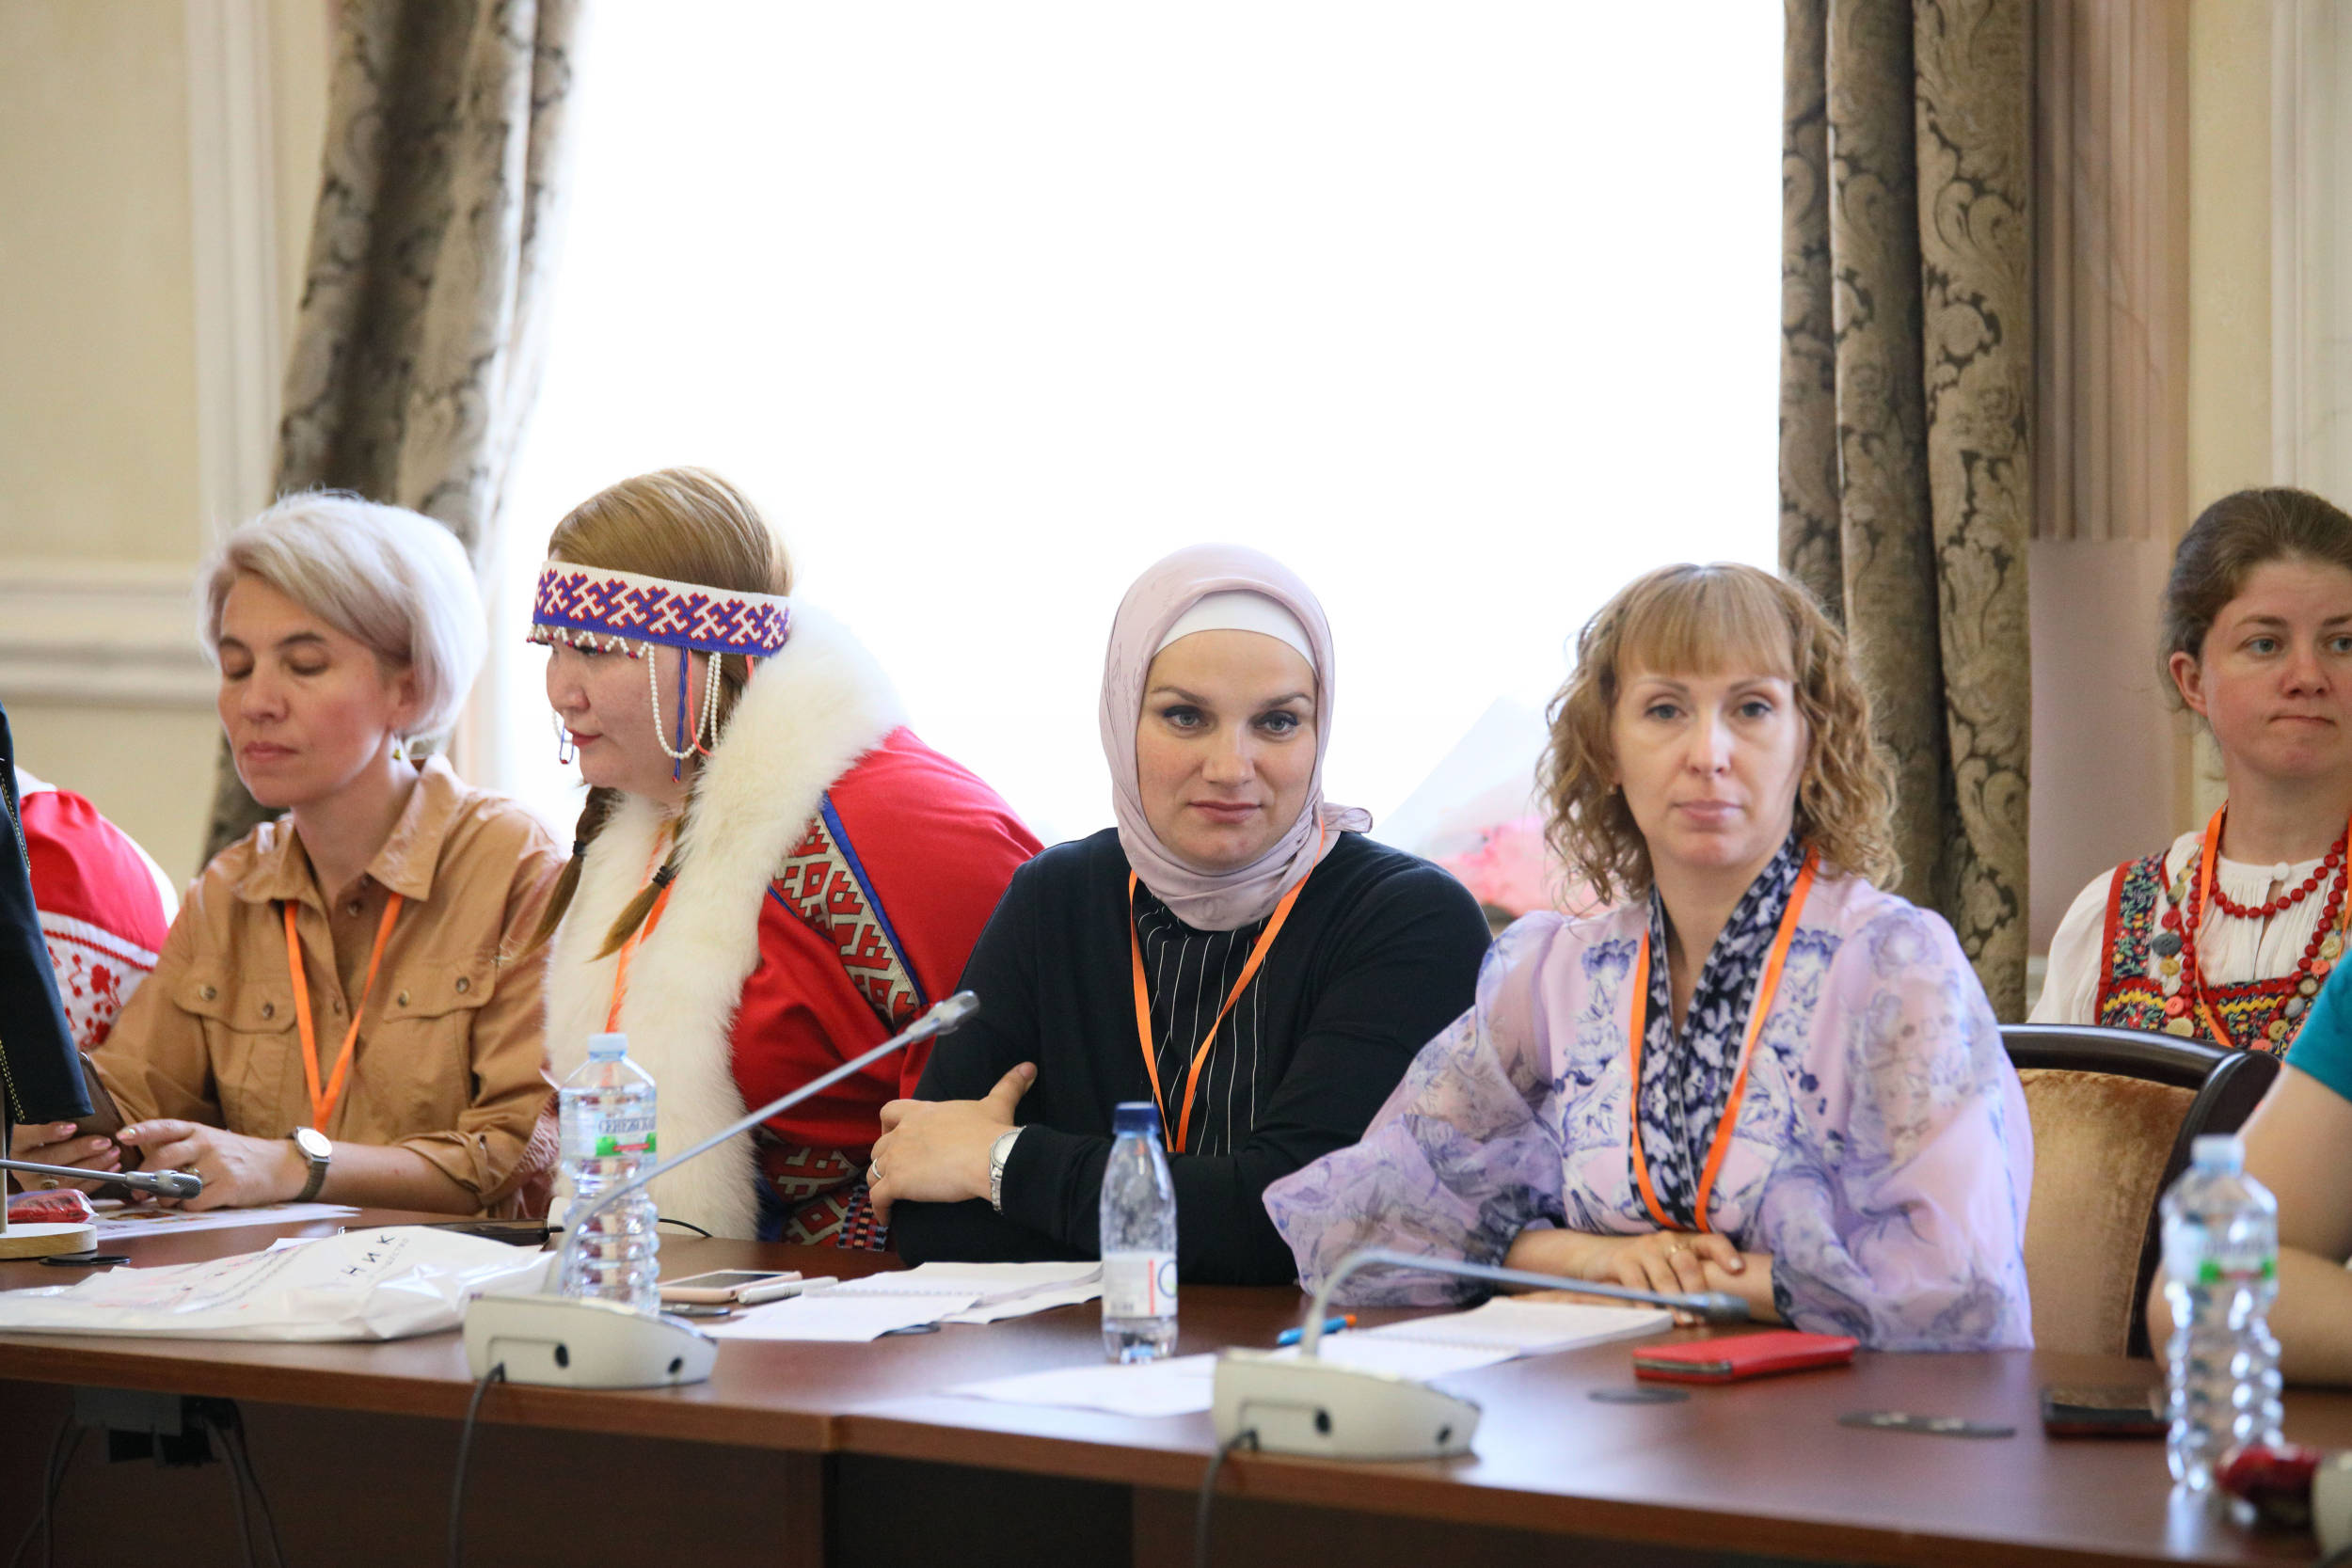 В Москве состоялась III Общероссийская конференция «Устойчивое развитие этнокультурного сектора»